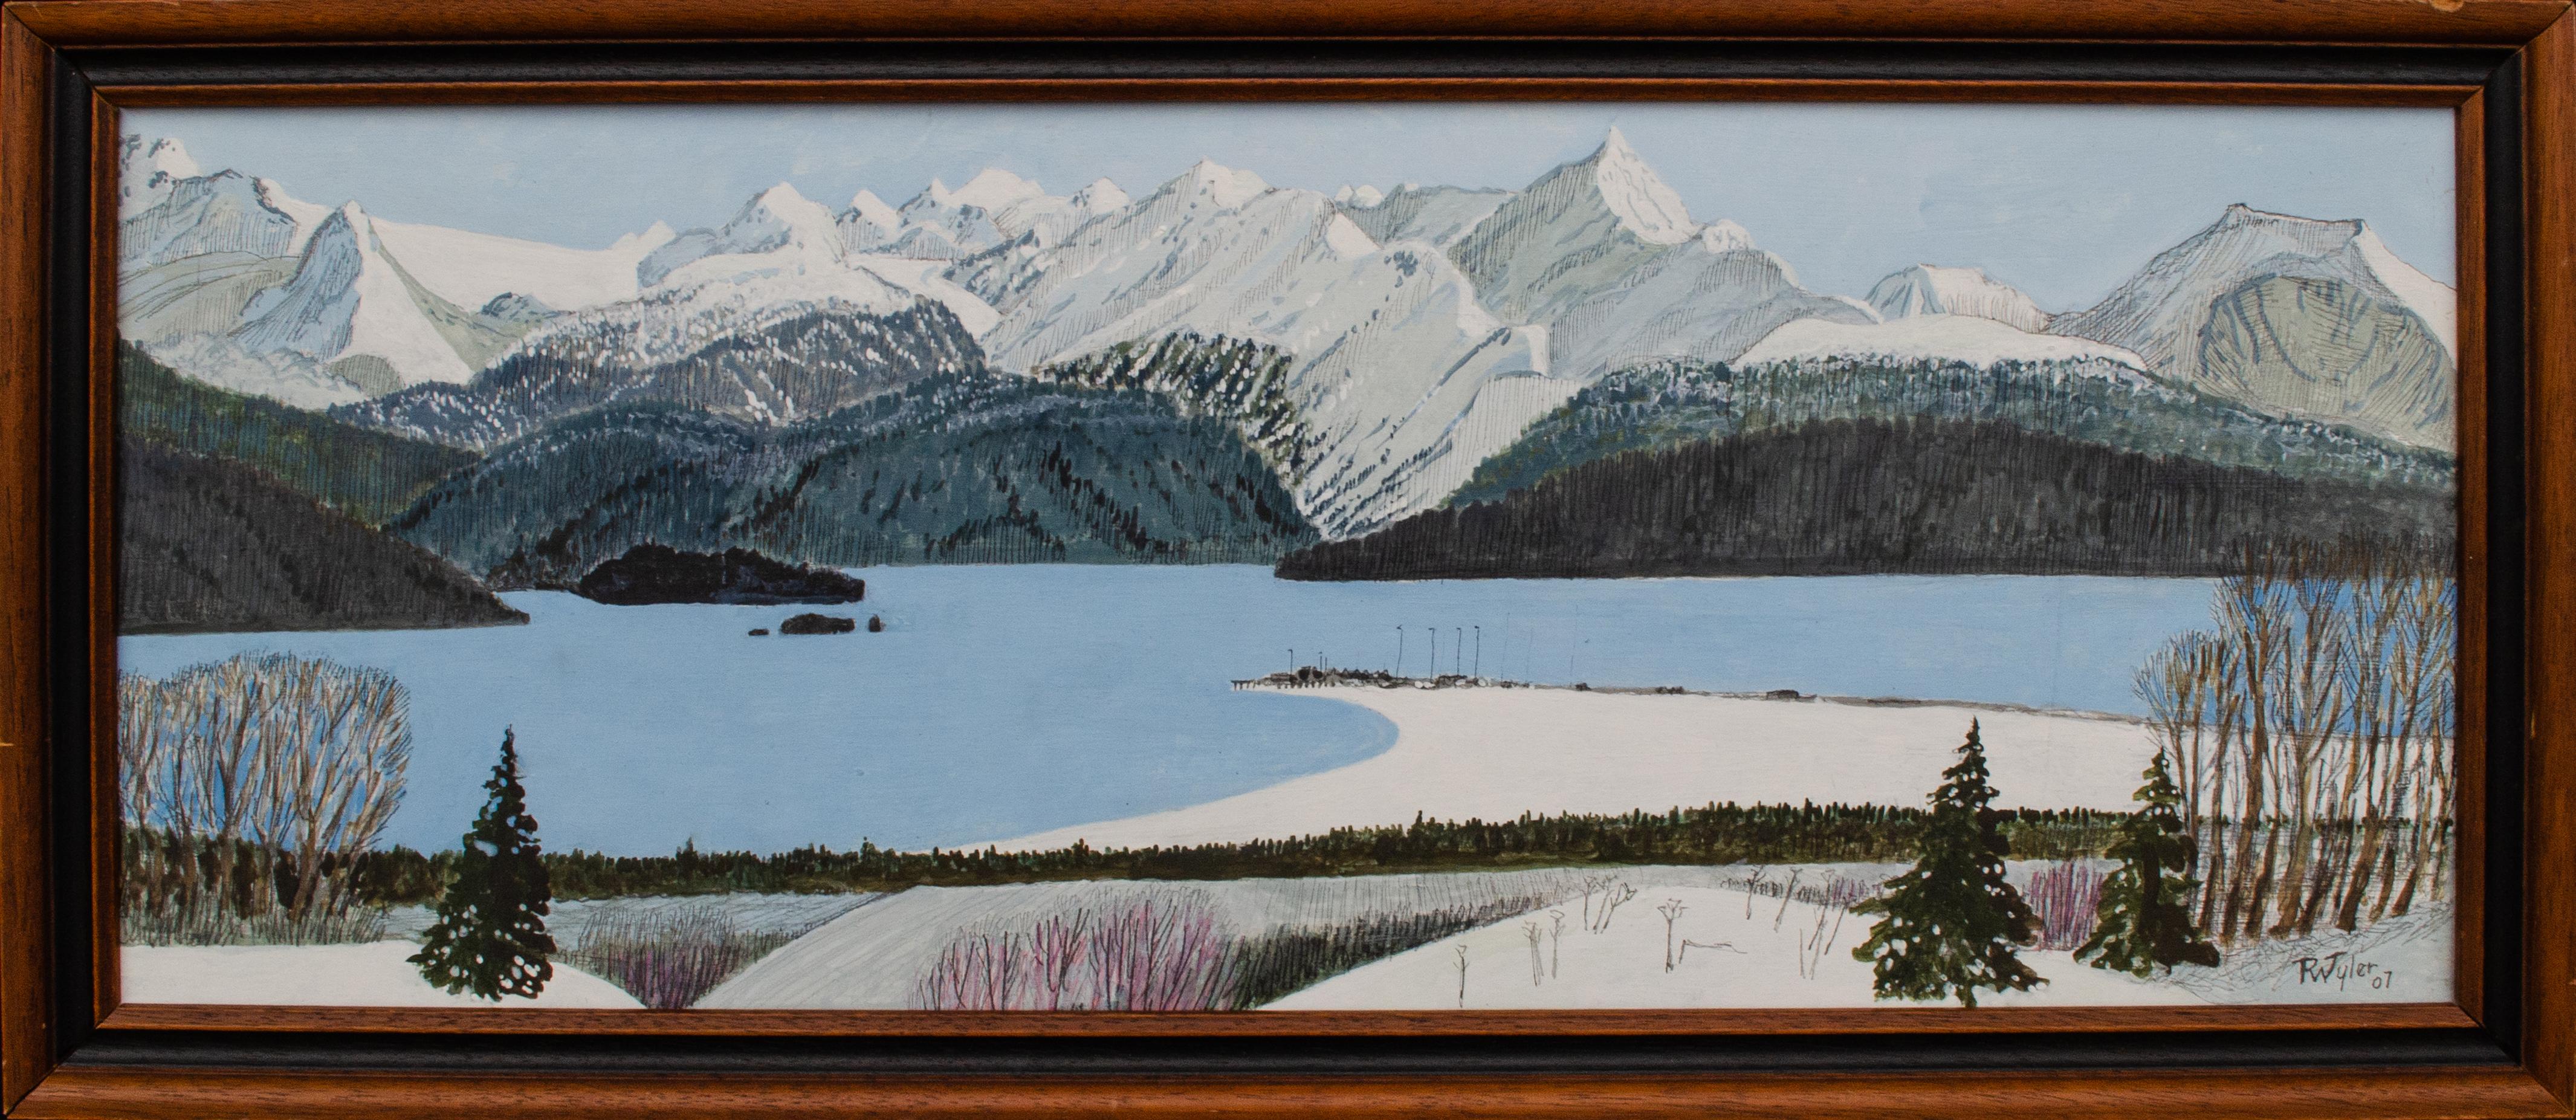 Richard Wilson Tyler Landscape Painting – Kachemak Bay, Alaskanische Landschaft von R.W. "Toby" Tyler